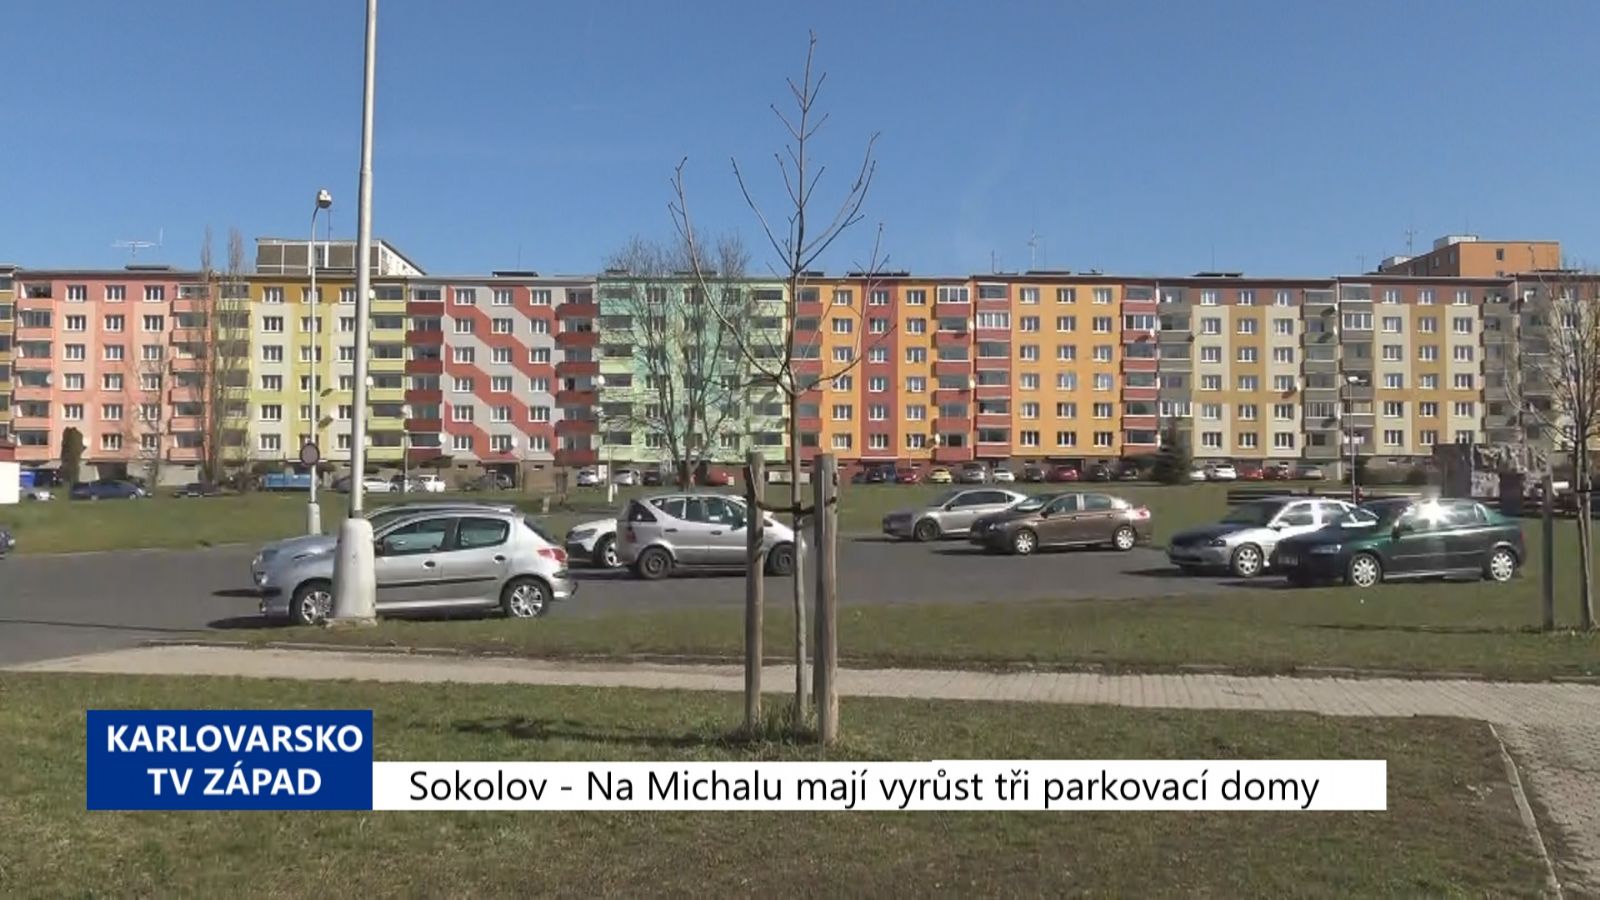 Sokolov: Na Michalu mají vyrůst tři parkovací domy (TV Západ)